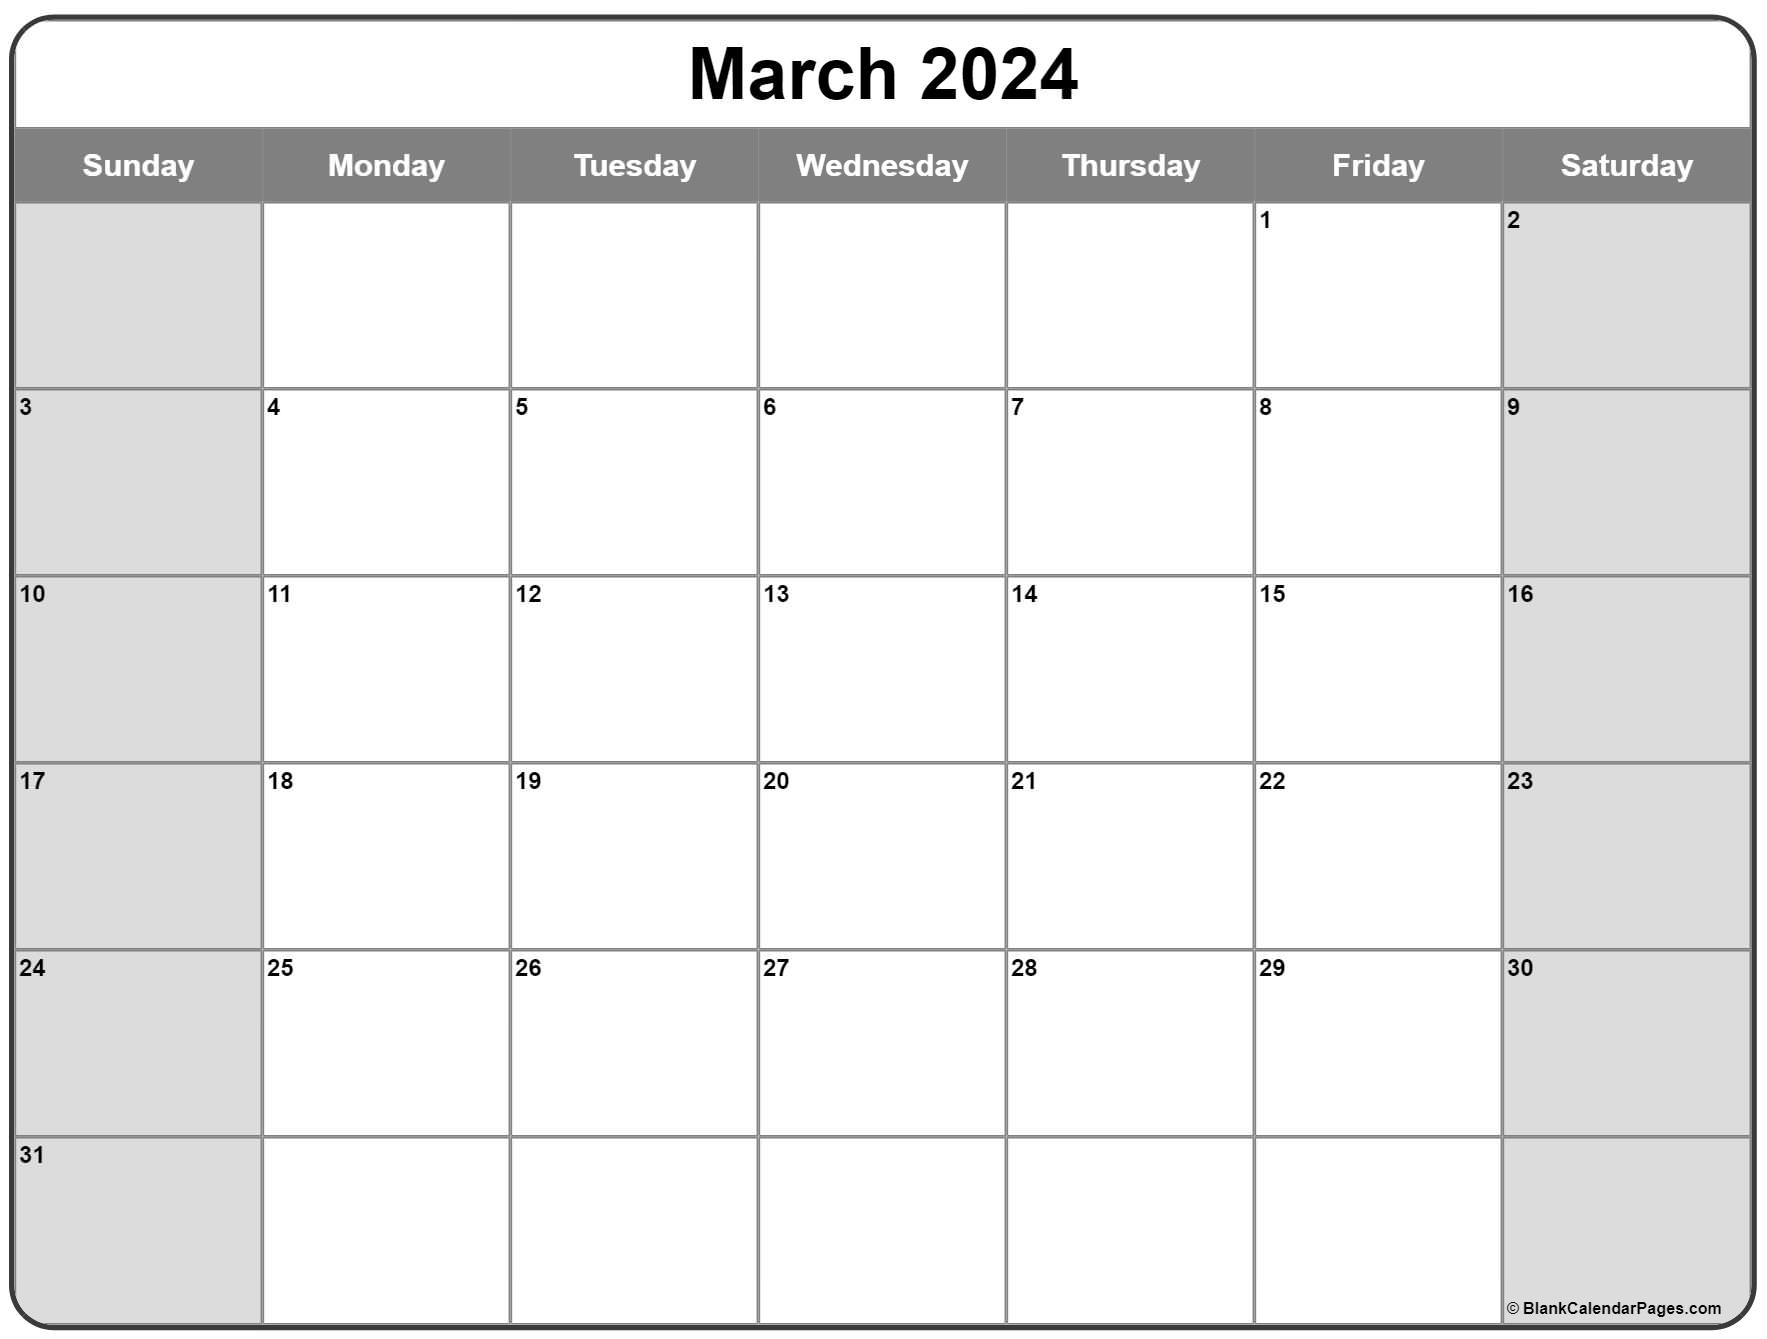 March 2022 calendar free printable calendar templates